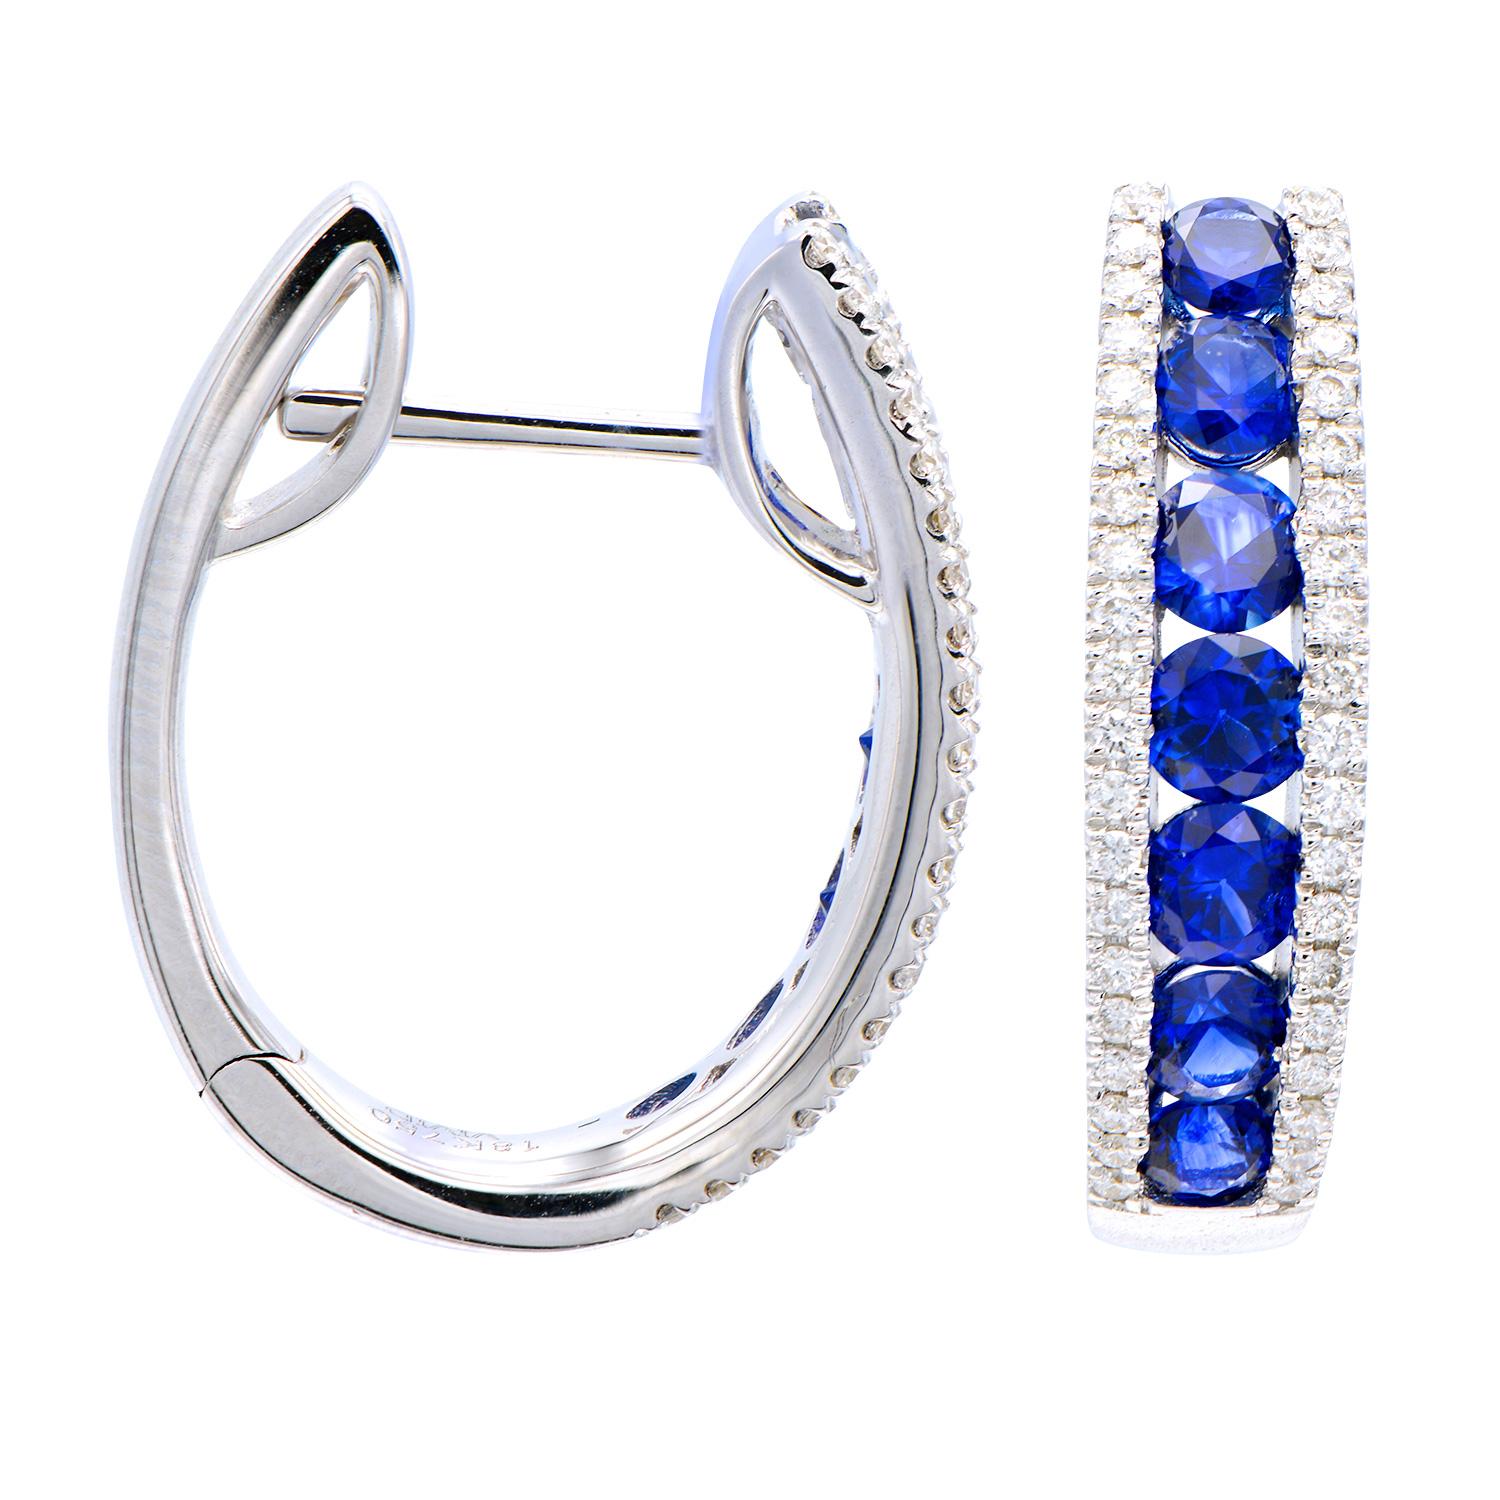 Diese wunderschönen Saphir- und Diamantringe sind ein klassisches Accessoire und eine Abwechslung zu den üblichen Diamanten. Diese Ohrringe enthalten 14 königsblaue Saphire von insgesamt 1,59 Karat und sind von 80 runden Diamanten der Farbe G VS2